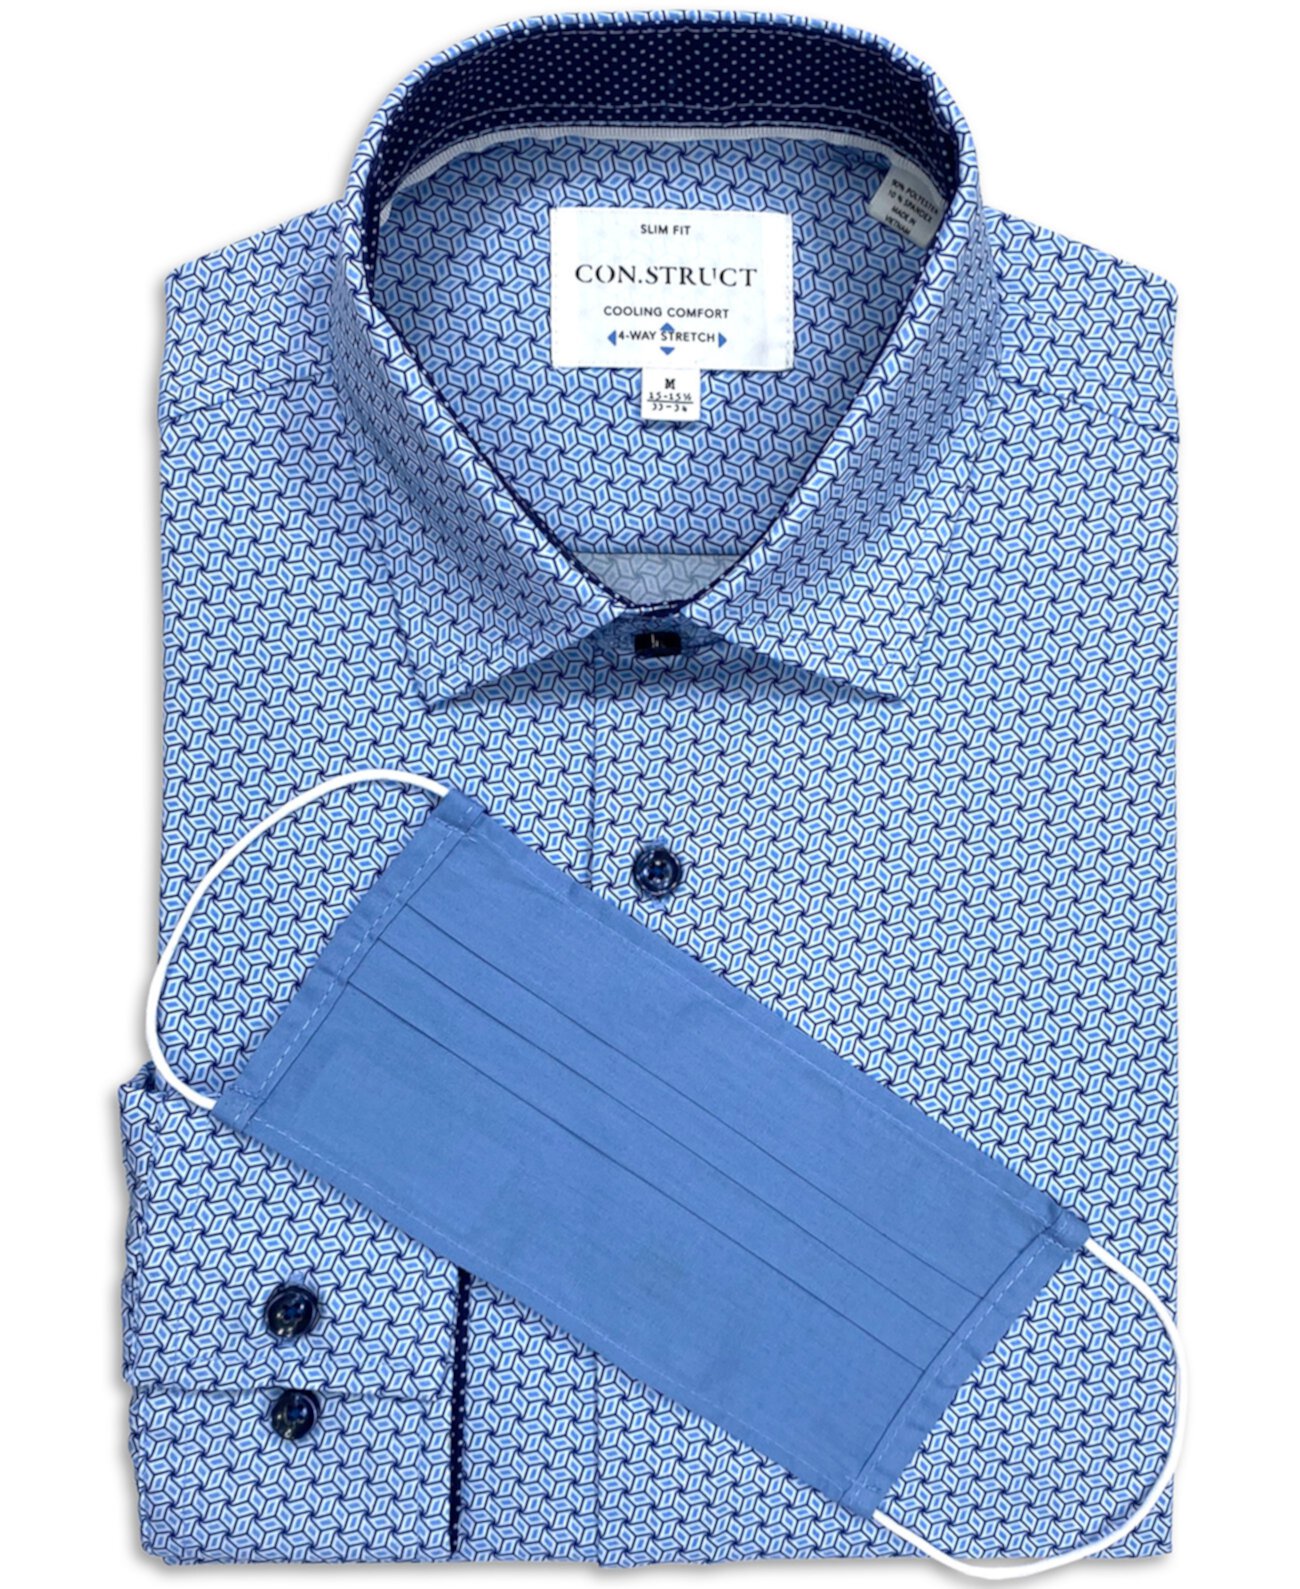 Мужская приталенная классическая рубашка Con.Struct с эластичным переплетенным узором и геометрическим принтом, созданная для Macy's «БЕСПЛАТНАЯ маска для лица, пока есть запасы». CONSTRUCT